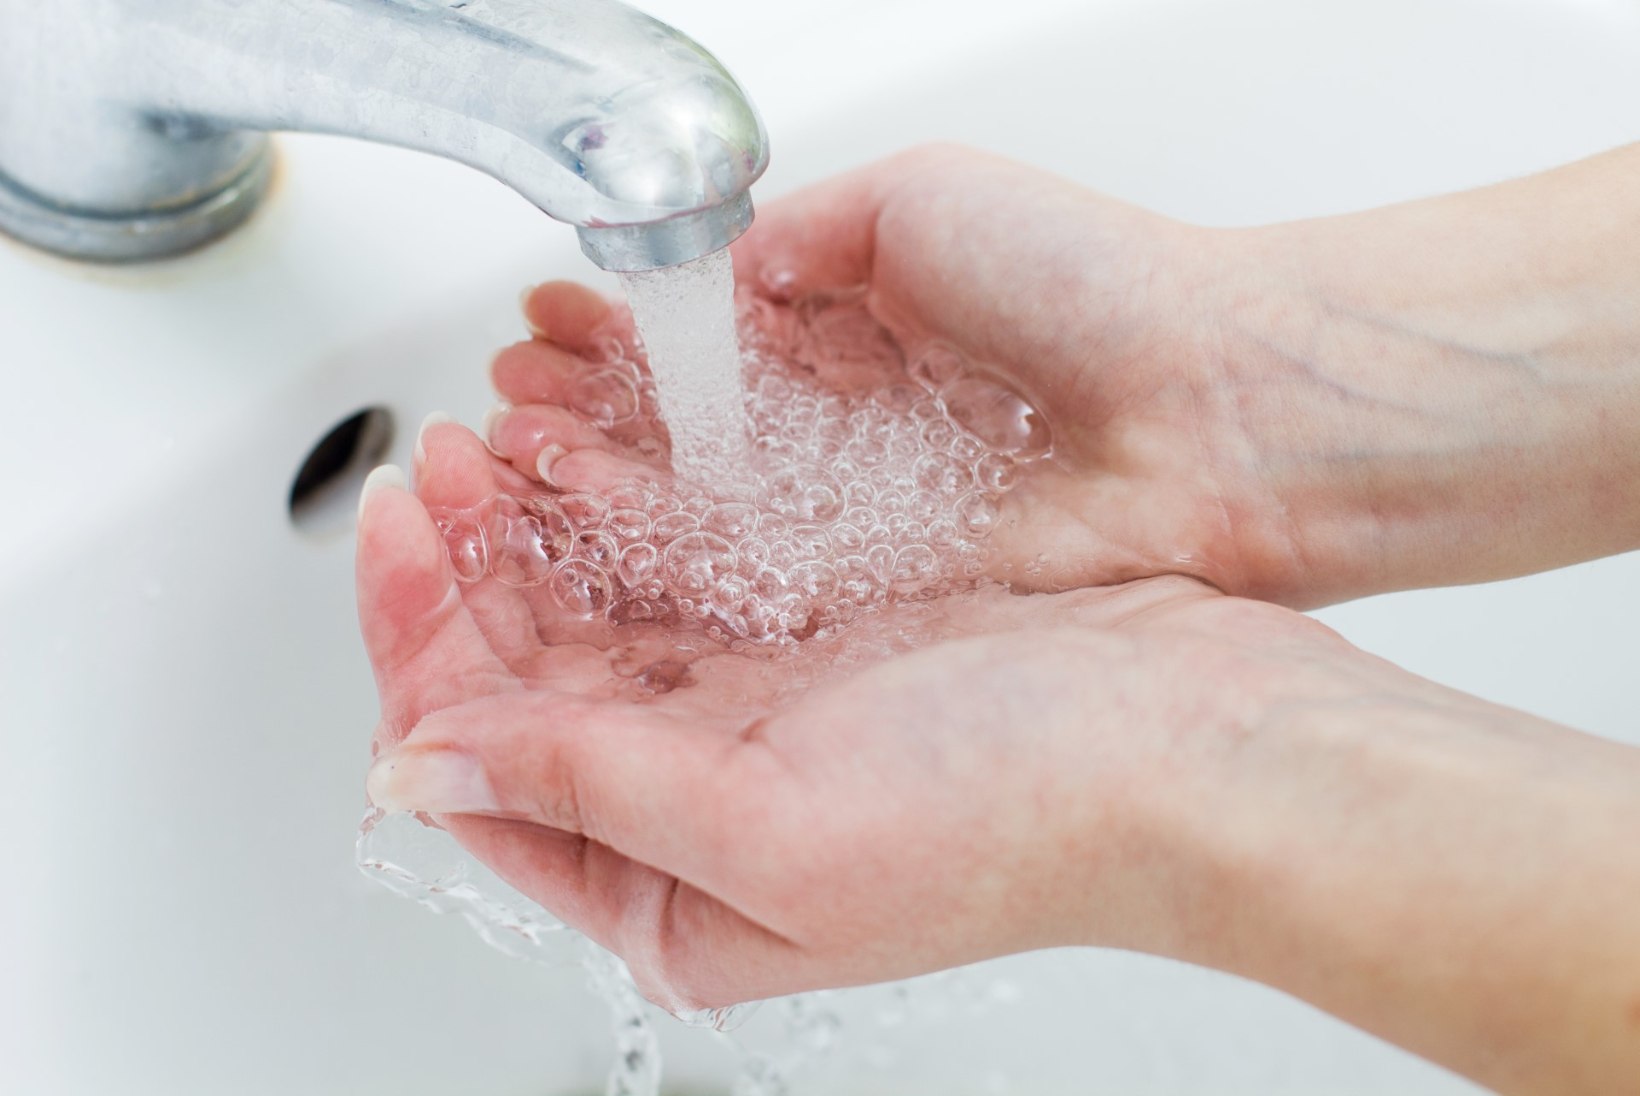 PEREÕDE: käte pesemine on olulisim viis viiruseid vältida